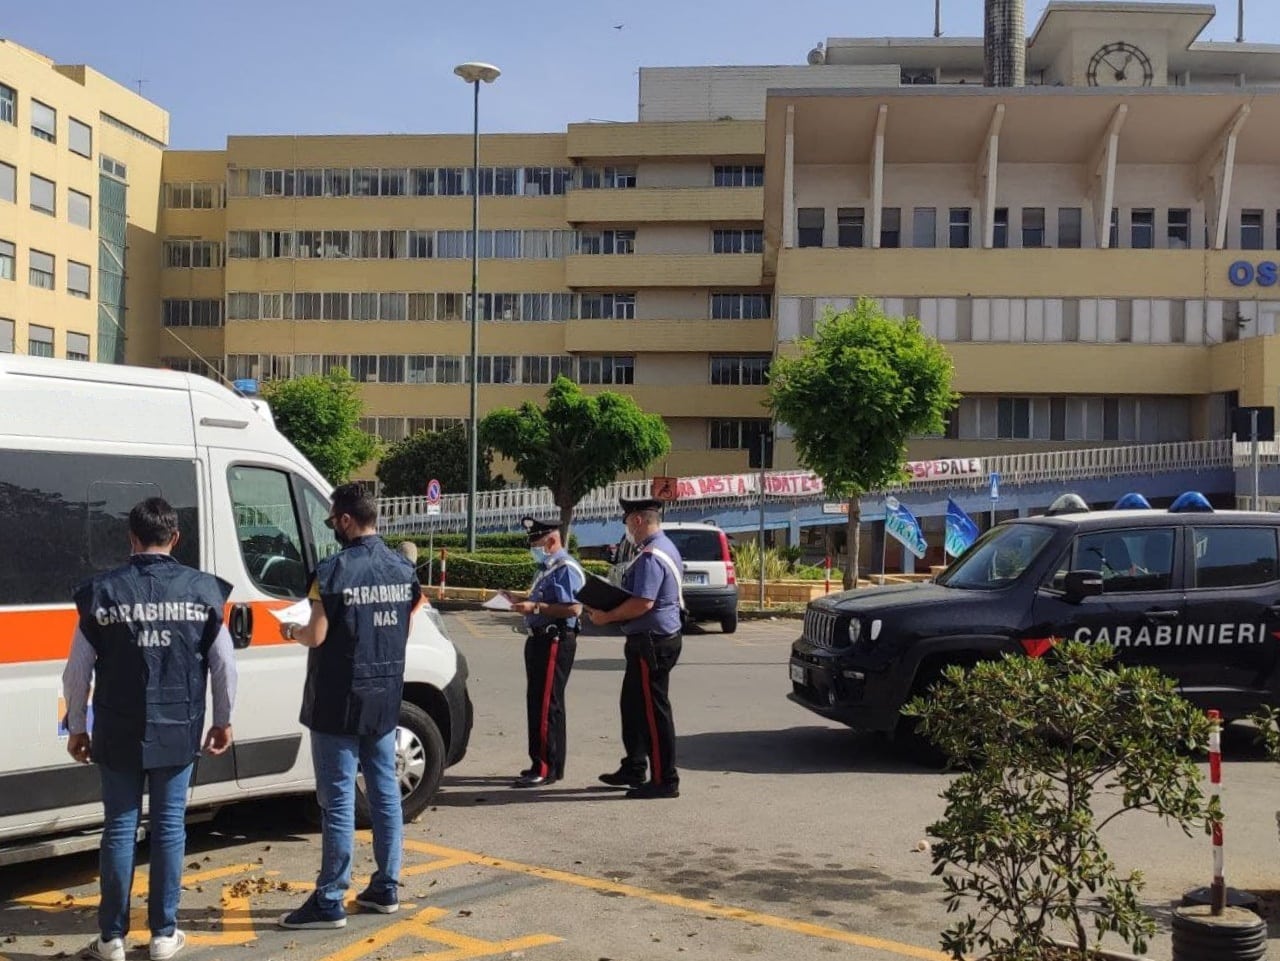 Operazione NAS di Catania, sequestrate 3 ambulanze: degrado e mancanza di sicurezza – VIDEO